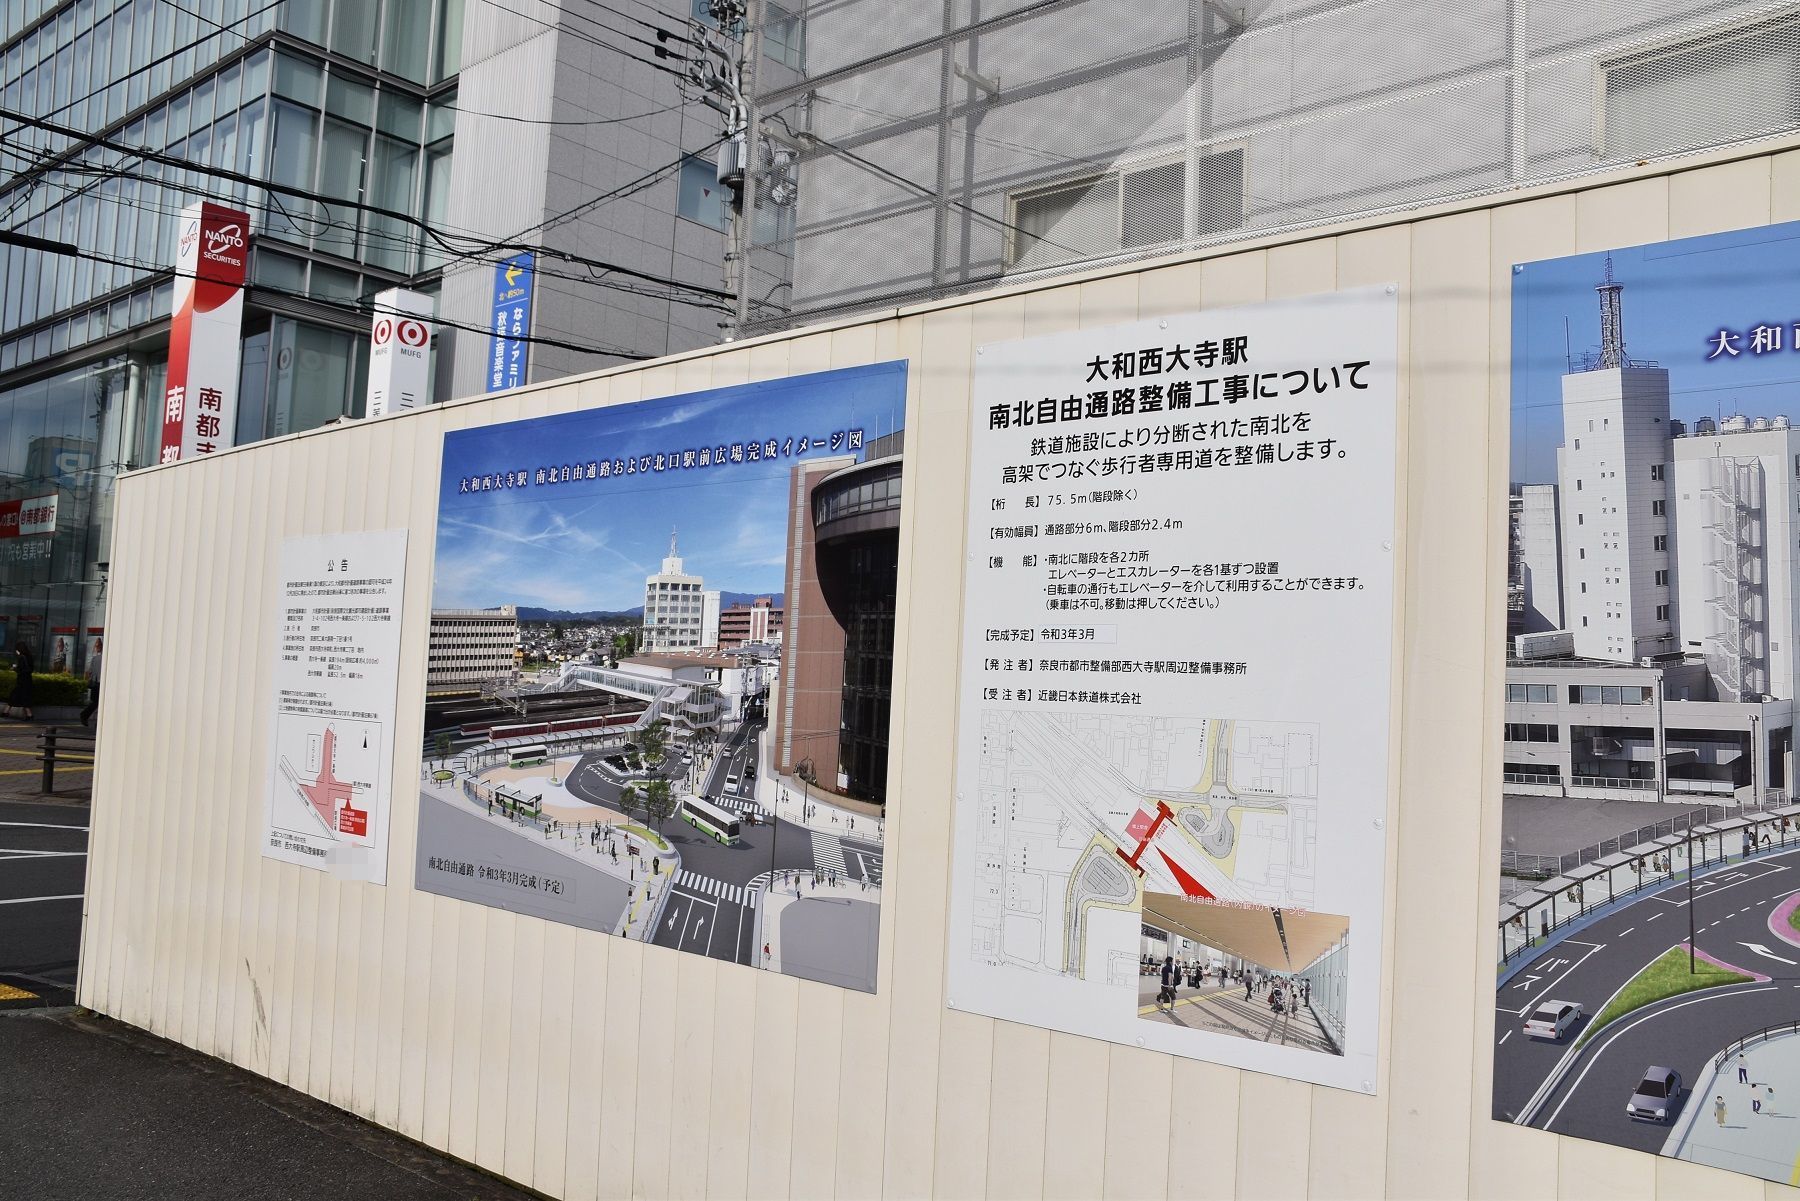 まほろば奈良のターミナル 大和西大寺駅 周辺 年9月 Osaka Sirokichies Blog